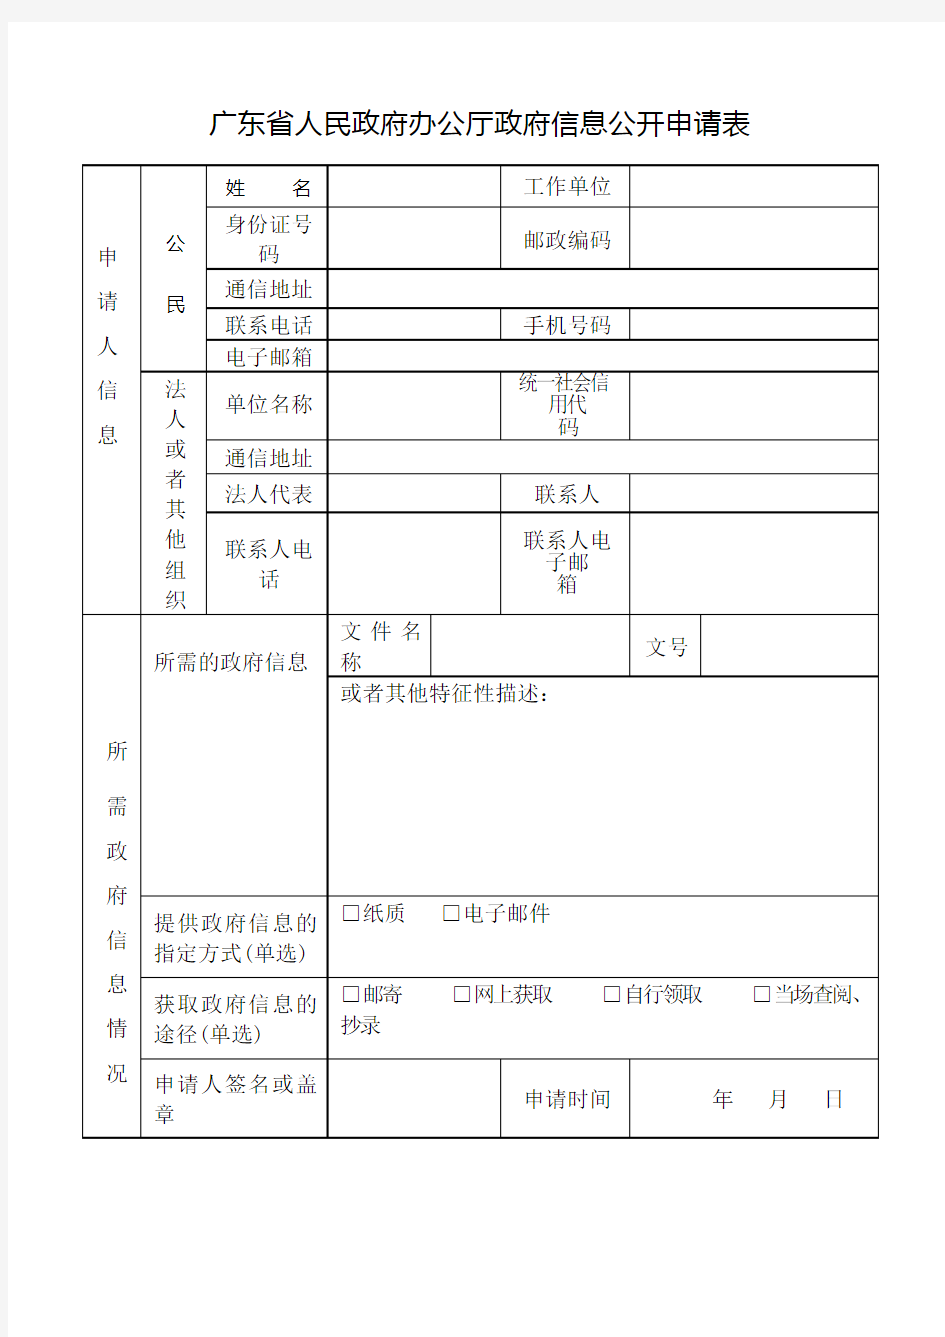 广东省人民政府办公厅政府信息公开申请表